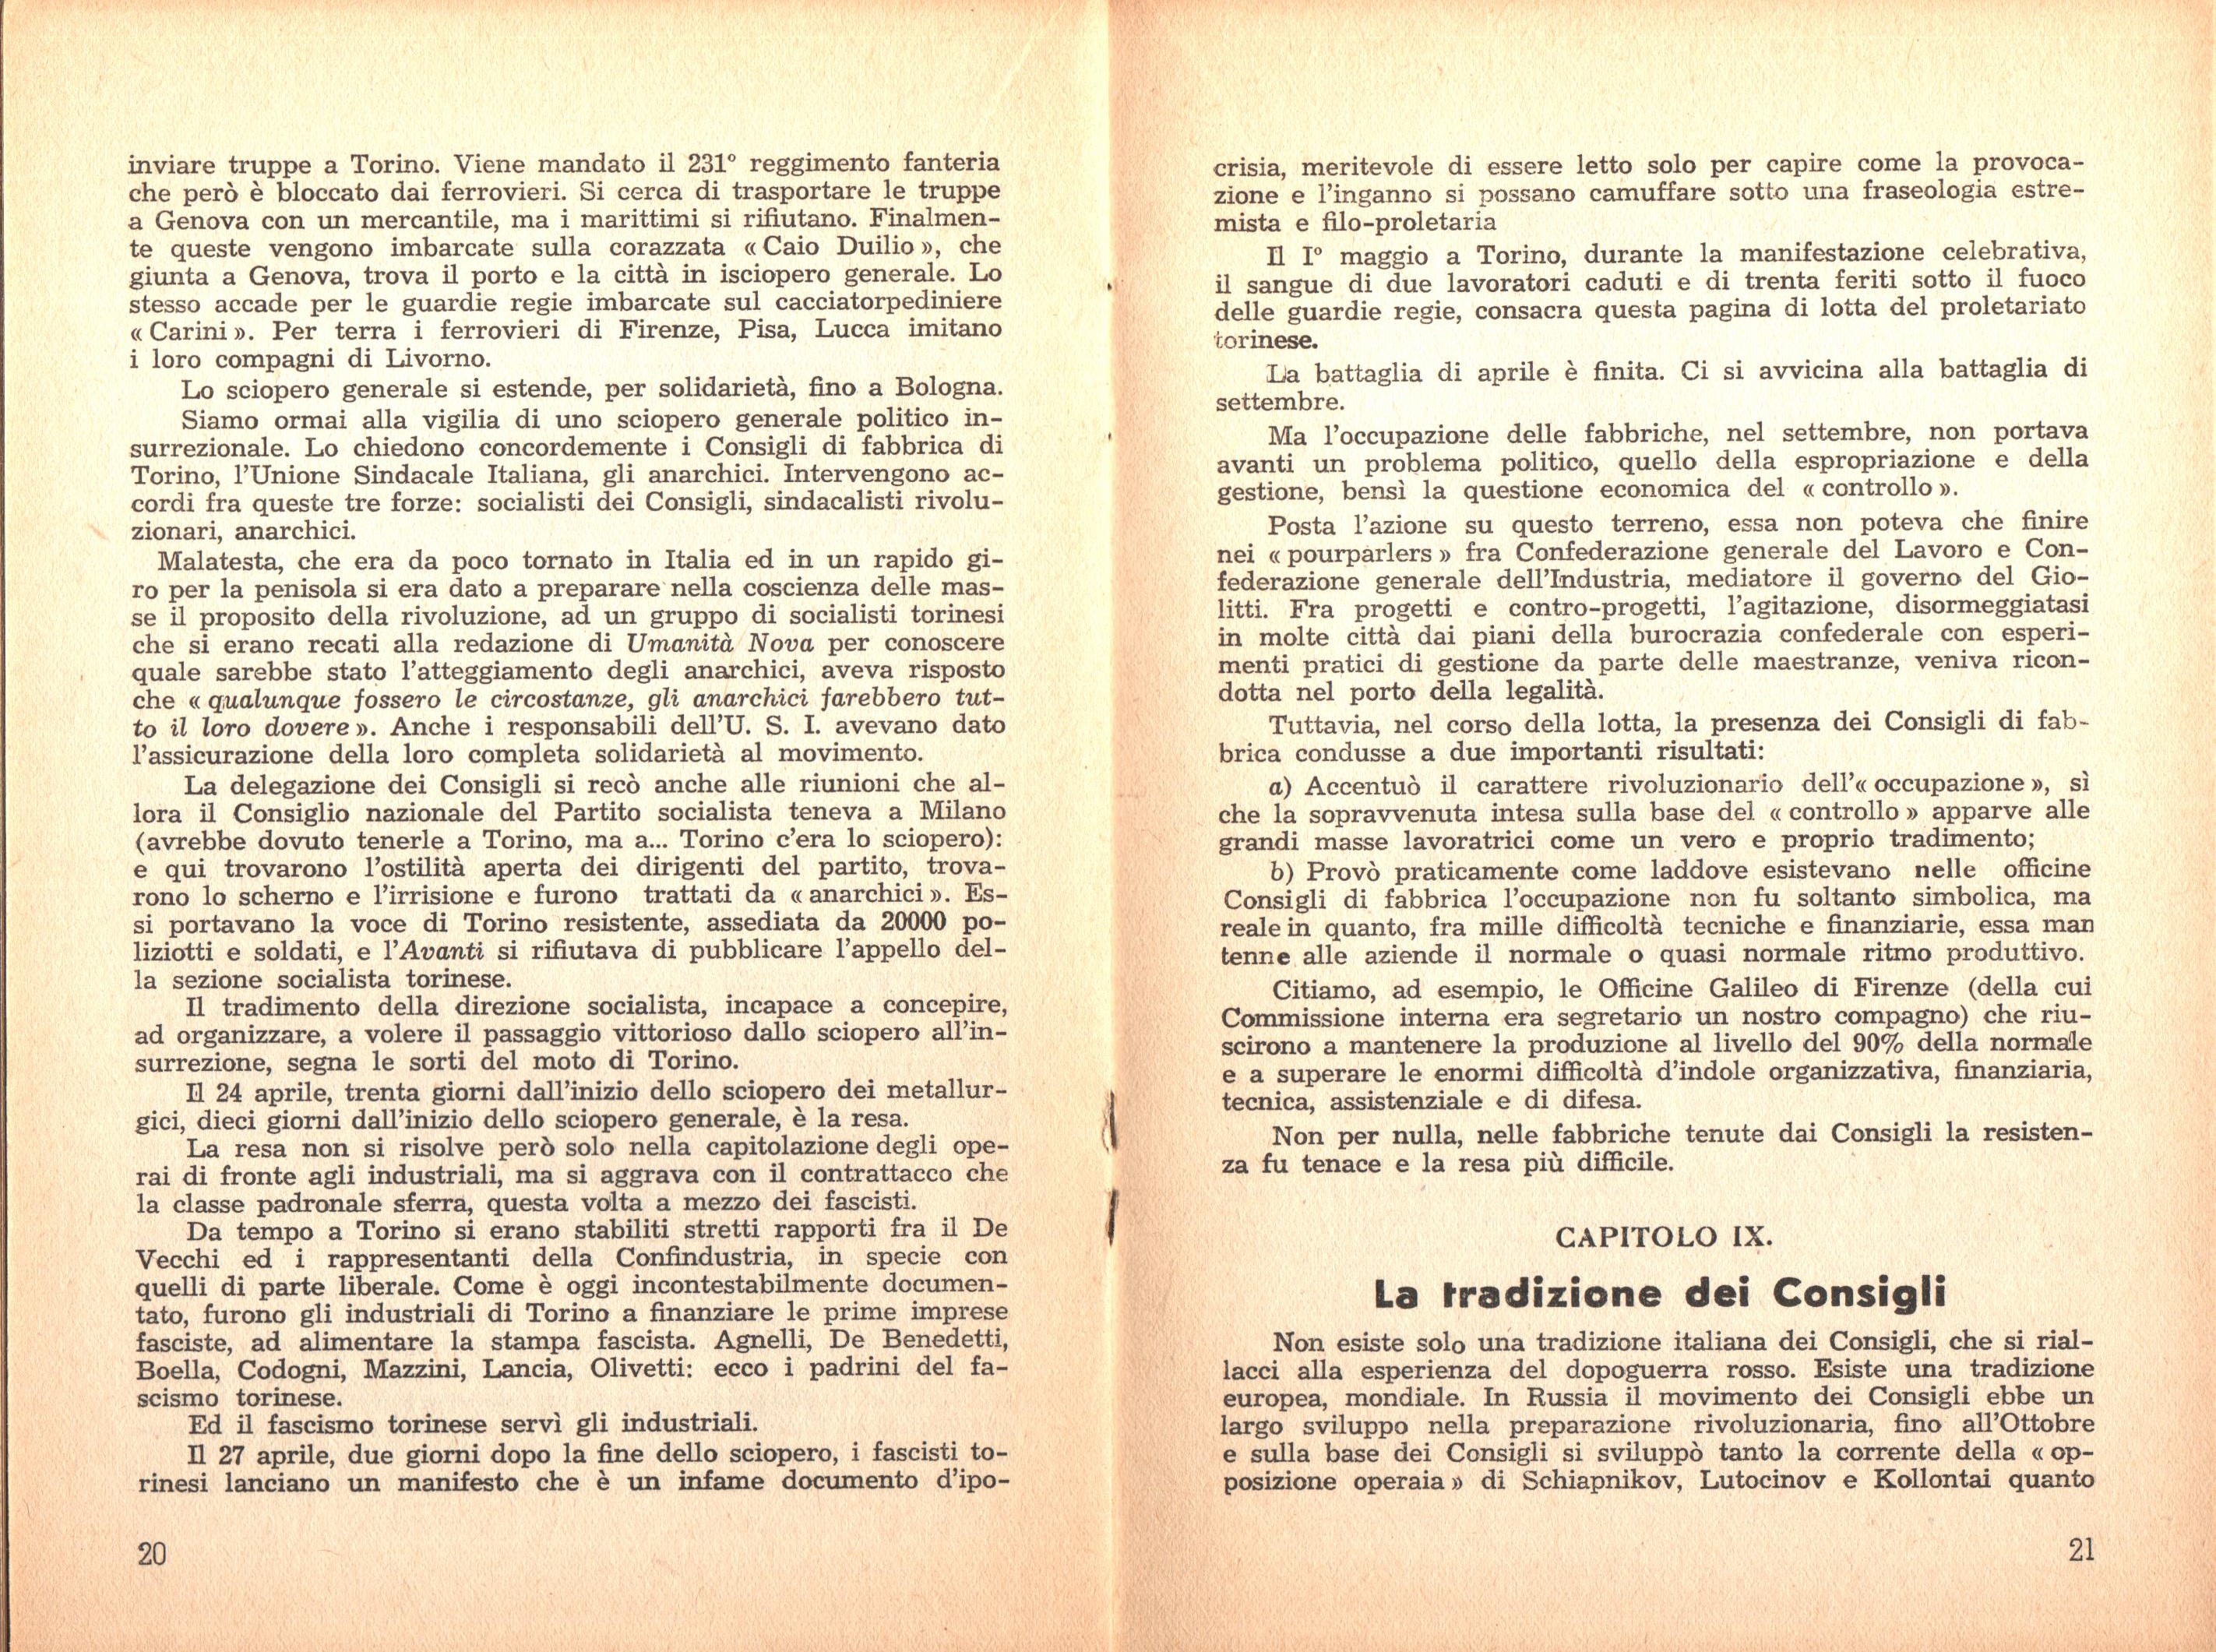 P. C. Masini, Anarchici e comunisti nel movimento dei Consigli a Torino - pag. 12